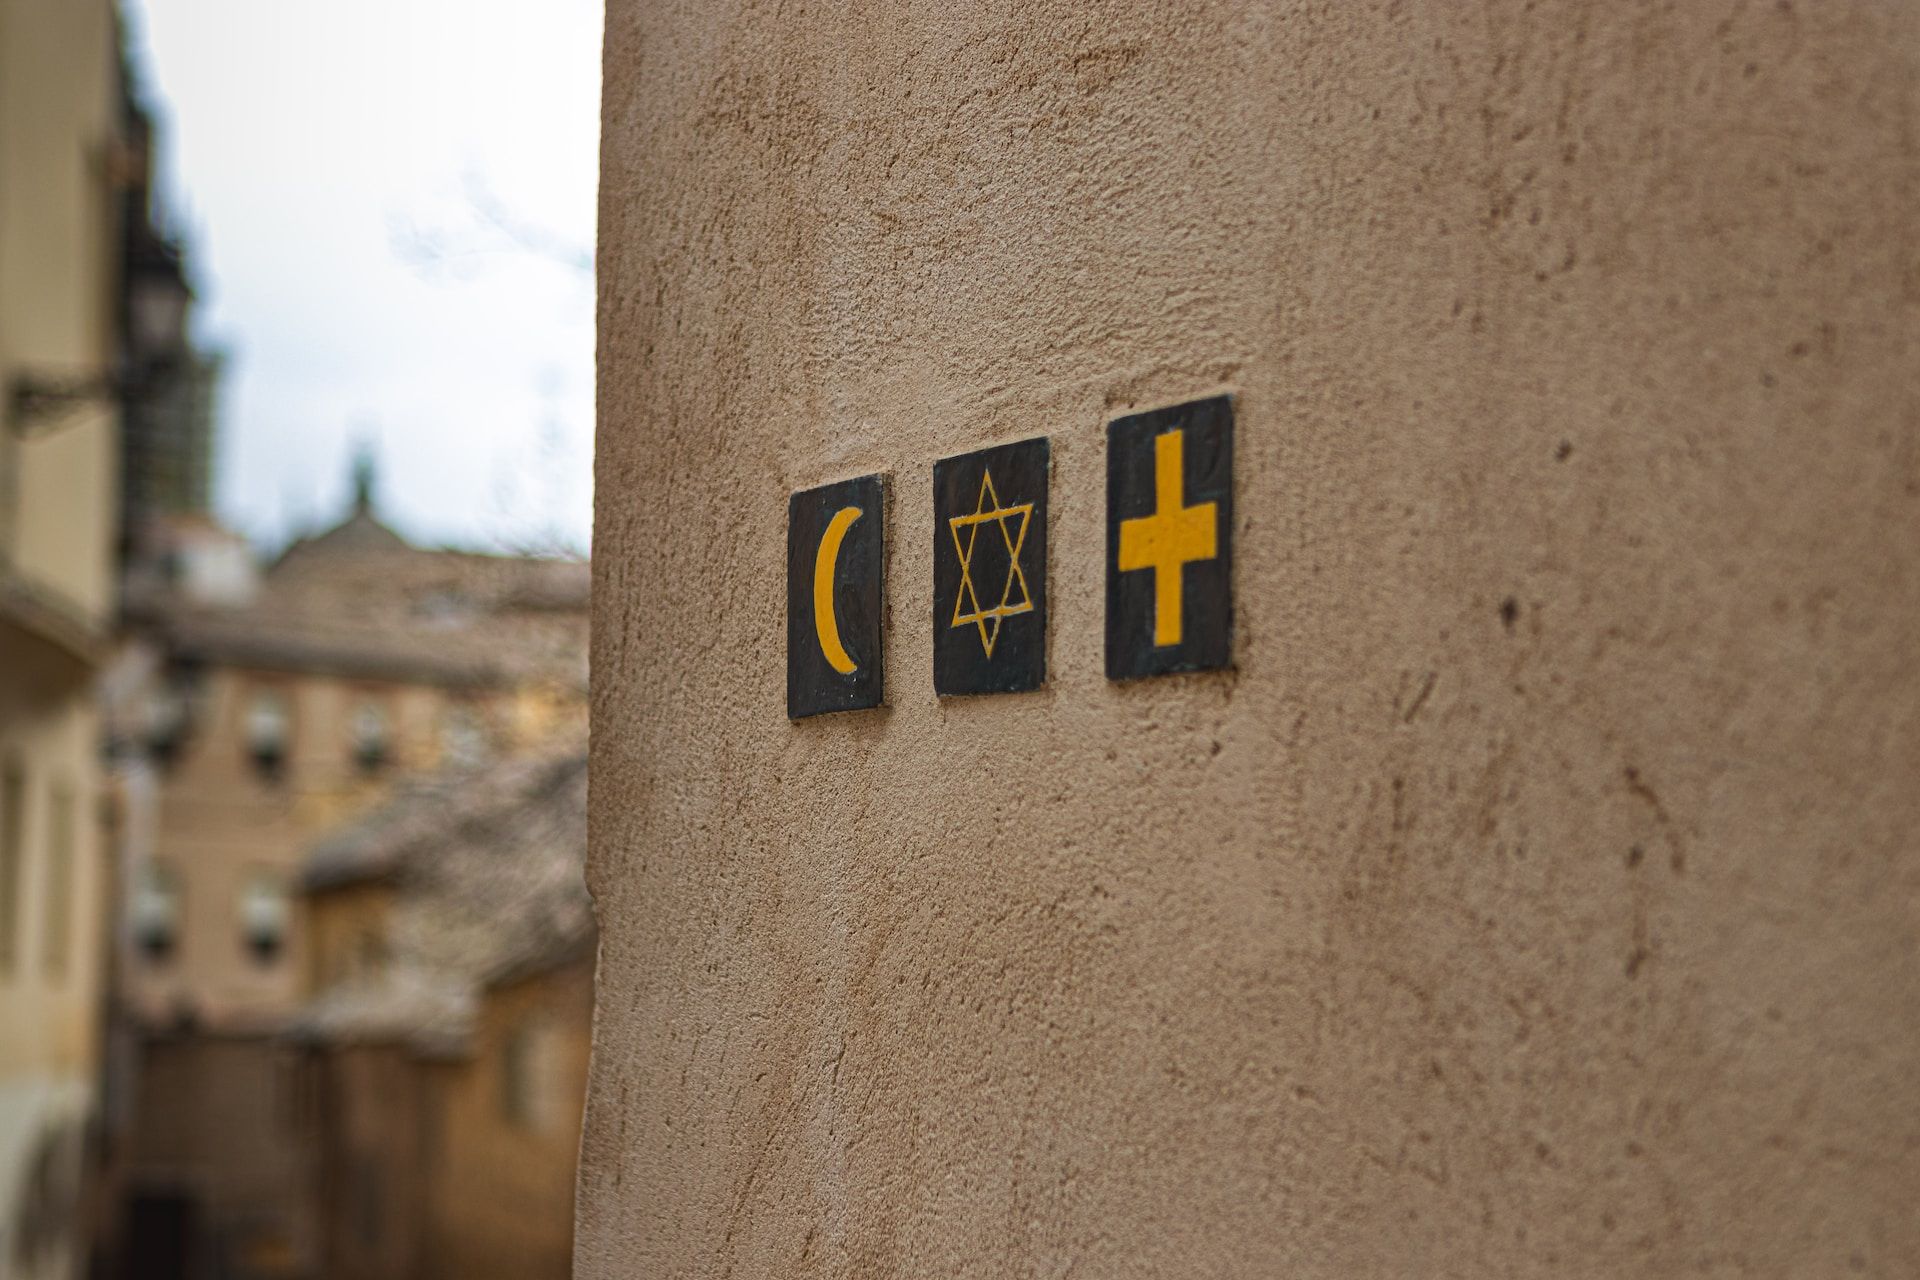 sur un mur : un croissant islamique, une étoile juive et une croix chrétienne - Photo de Noah Holm sur Photo de Noah Holm sur https://unsplash.com/fr/photos/UVssyWRCB24